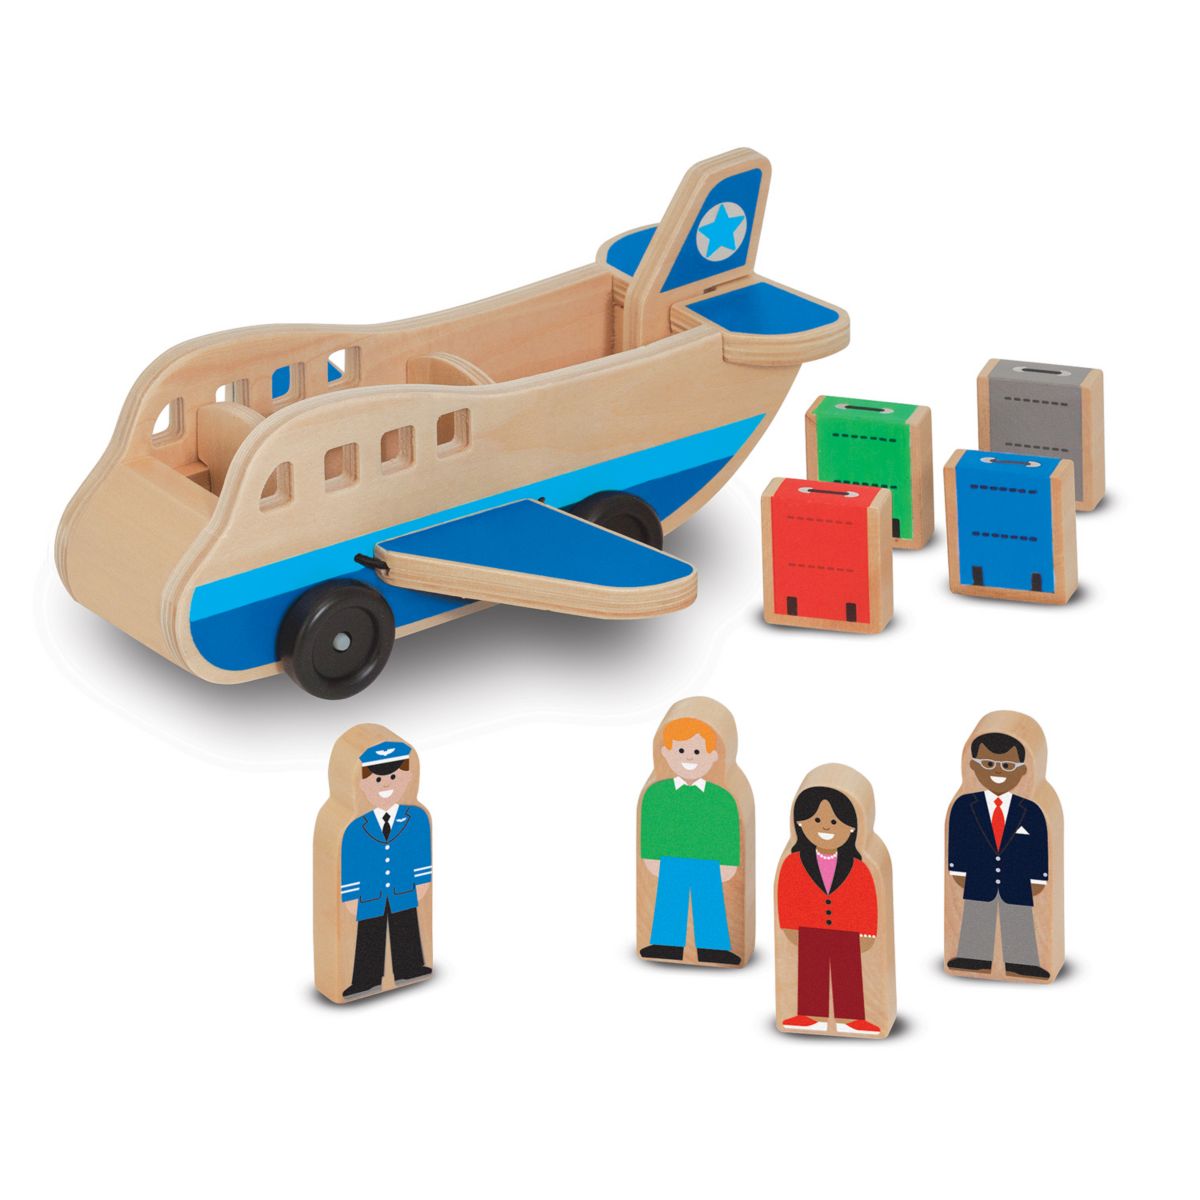 Деревянный игровой набор с самолетиком Melissa & Doug Melissa & Doug